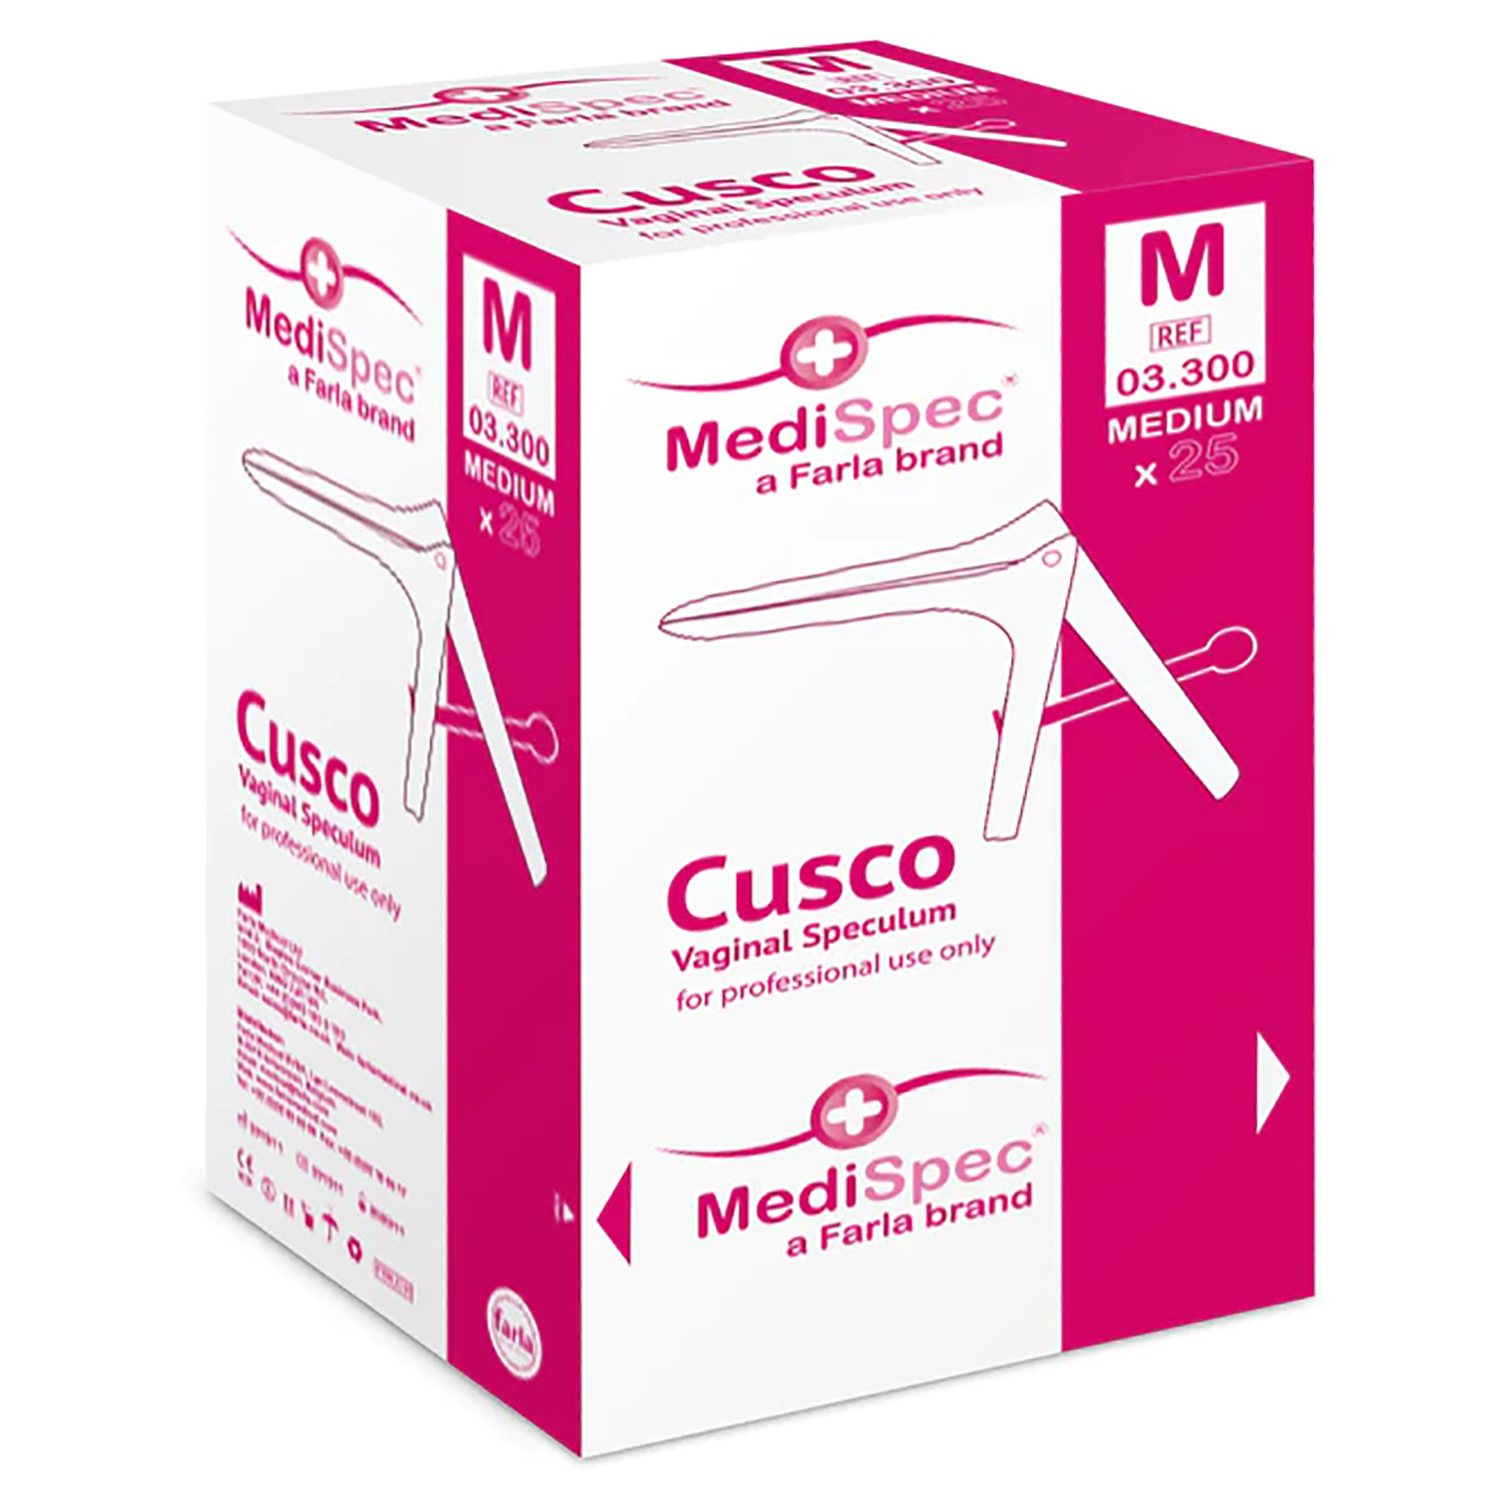 MediSpec Cusco Vaginal Speculum (Locking Mechanism) | Pack of 25 (6)